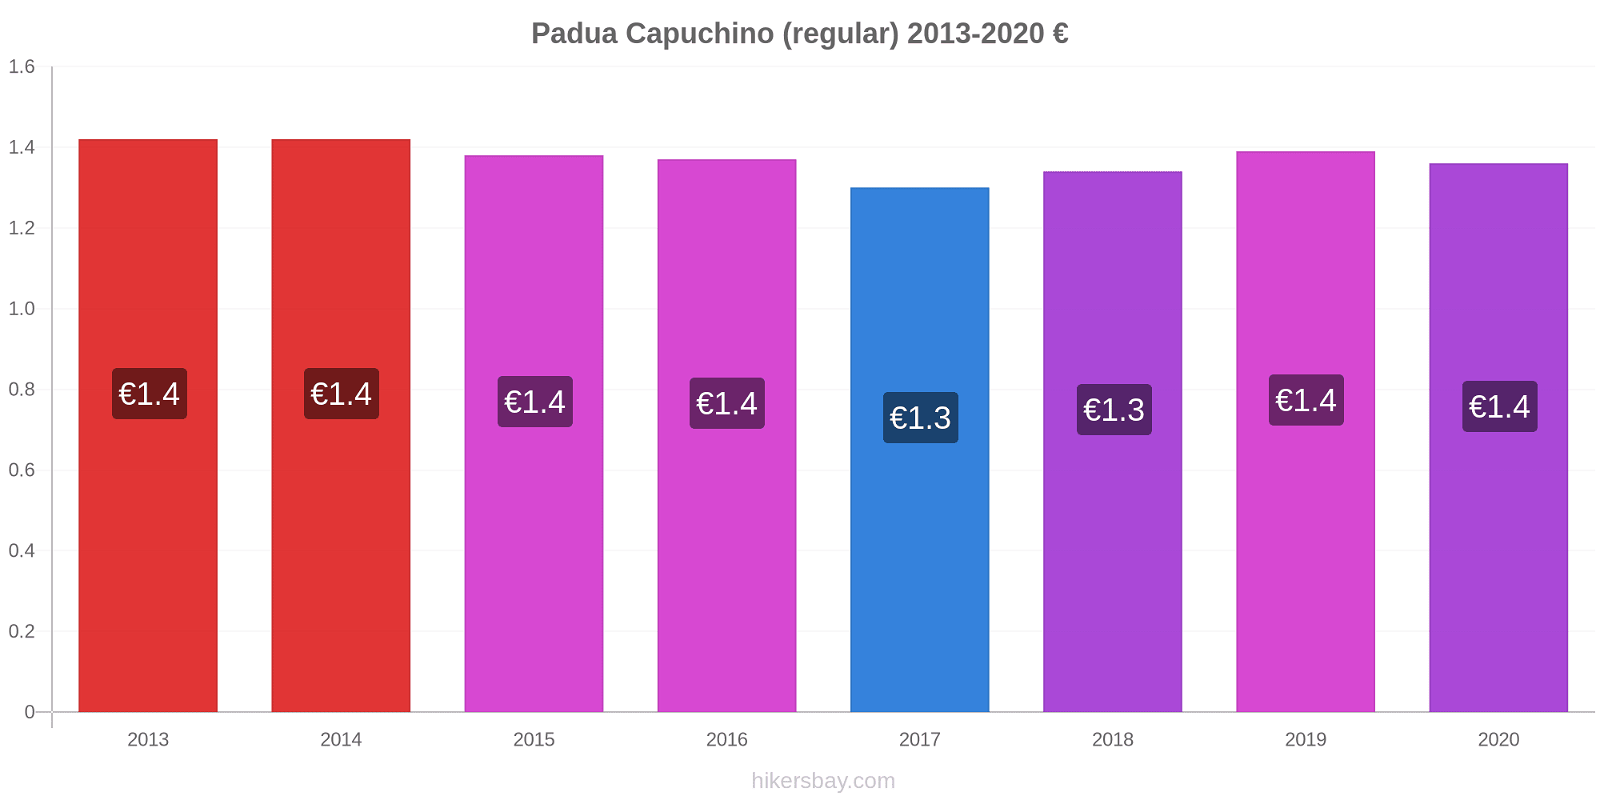 Padua cambios de precios Capuchino (regular) hikersbay.com